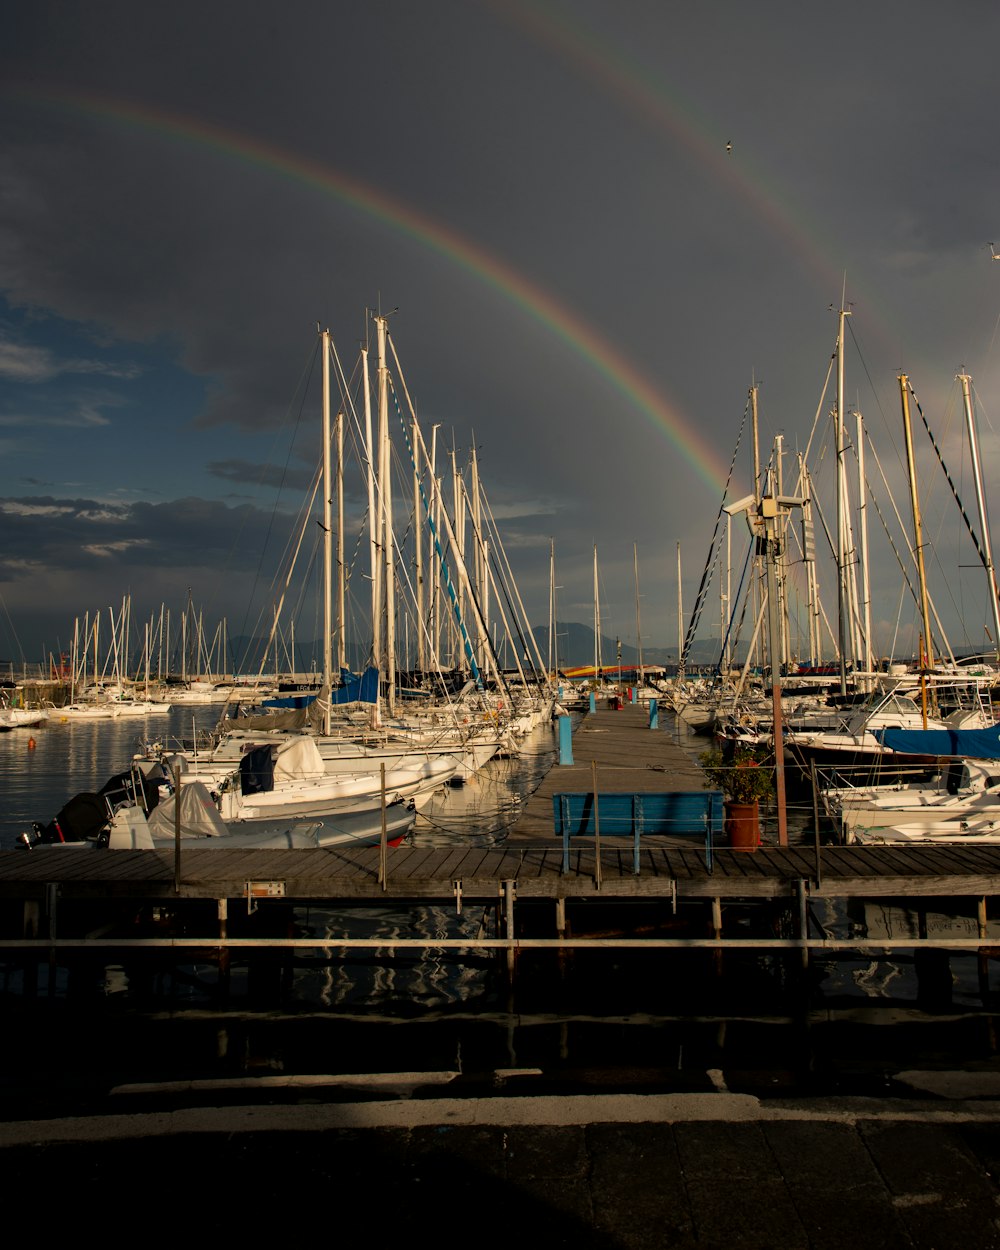 a rainbow in the sky over a marina